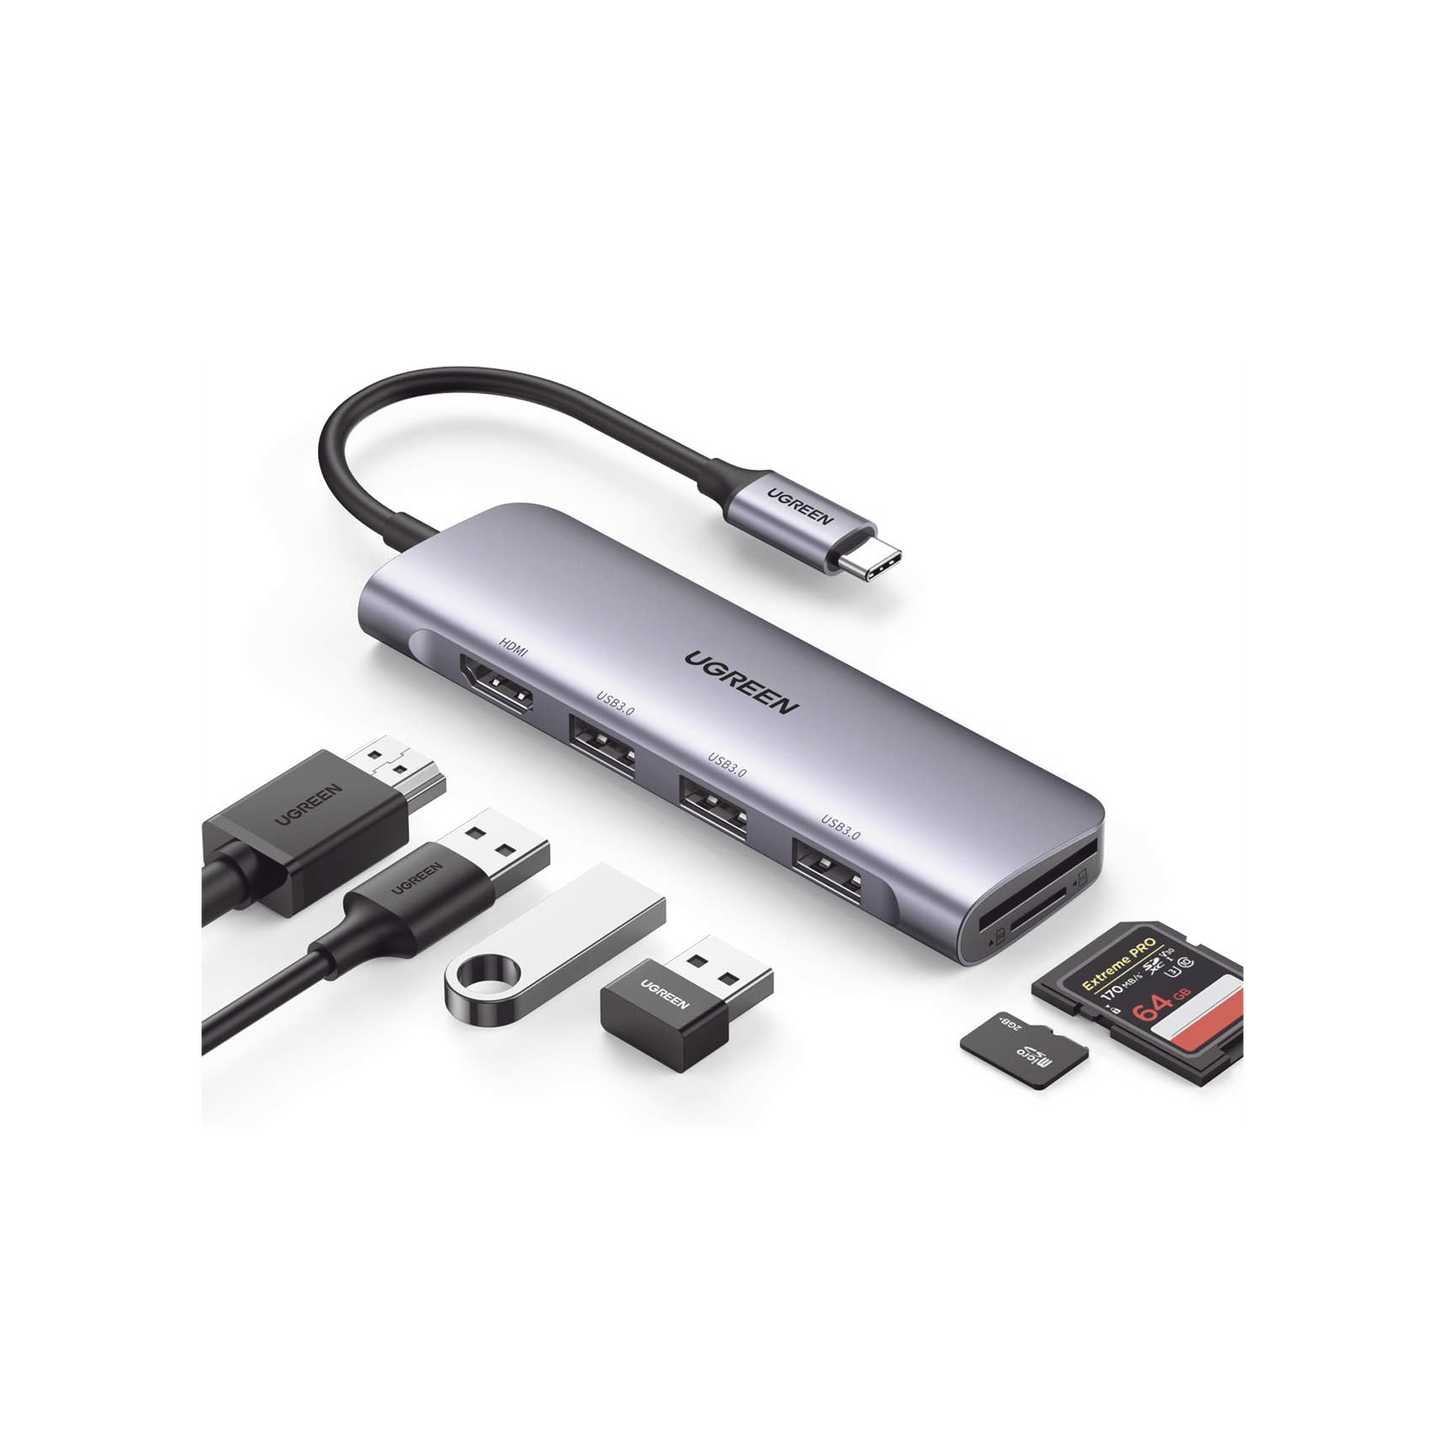 HUB USB-C (Docking Station) 6 en 1 | HDMI 4K@30Hz | 3 Puertos USB 3.0 | Lector Tarjeta SD + Micro SD (TF) Uso Simultáneo | Chip de Última Generación | Potente Disipación de Calor |  Caja de Aluminio.